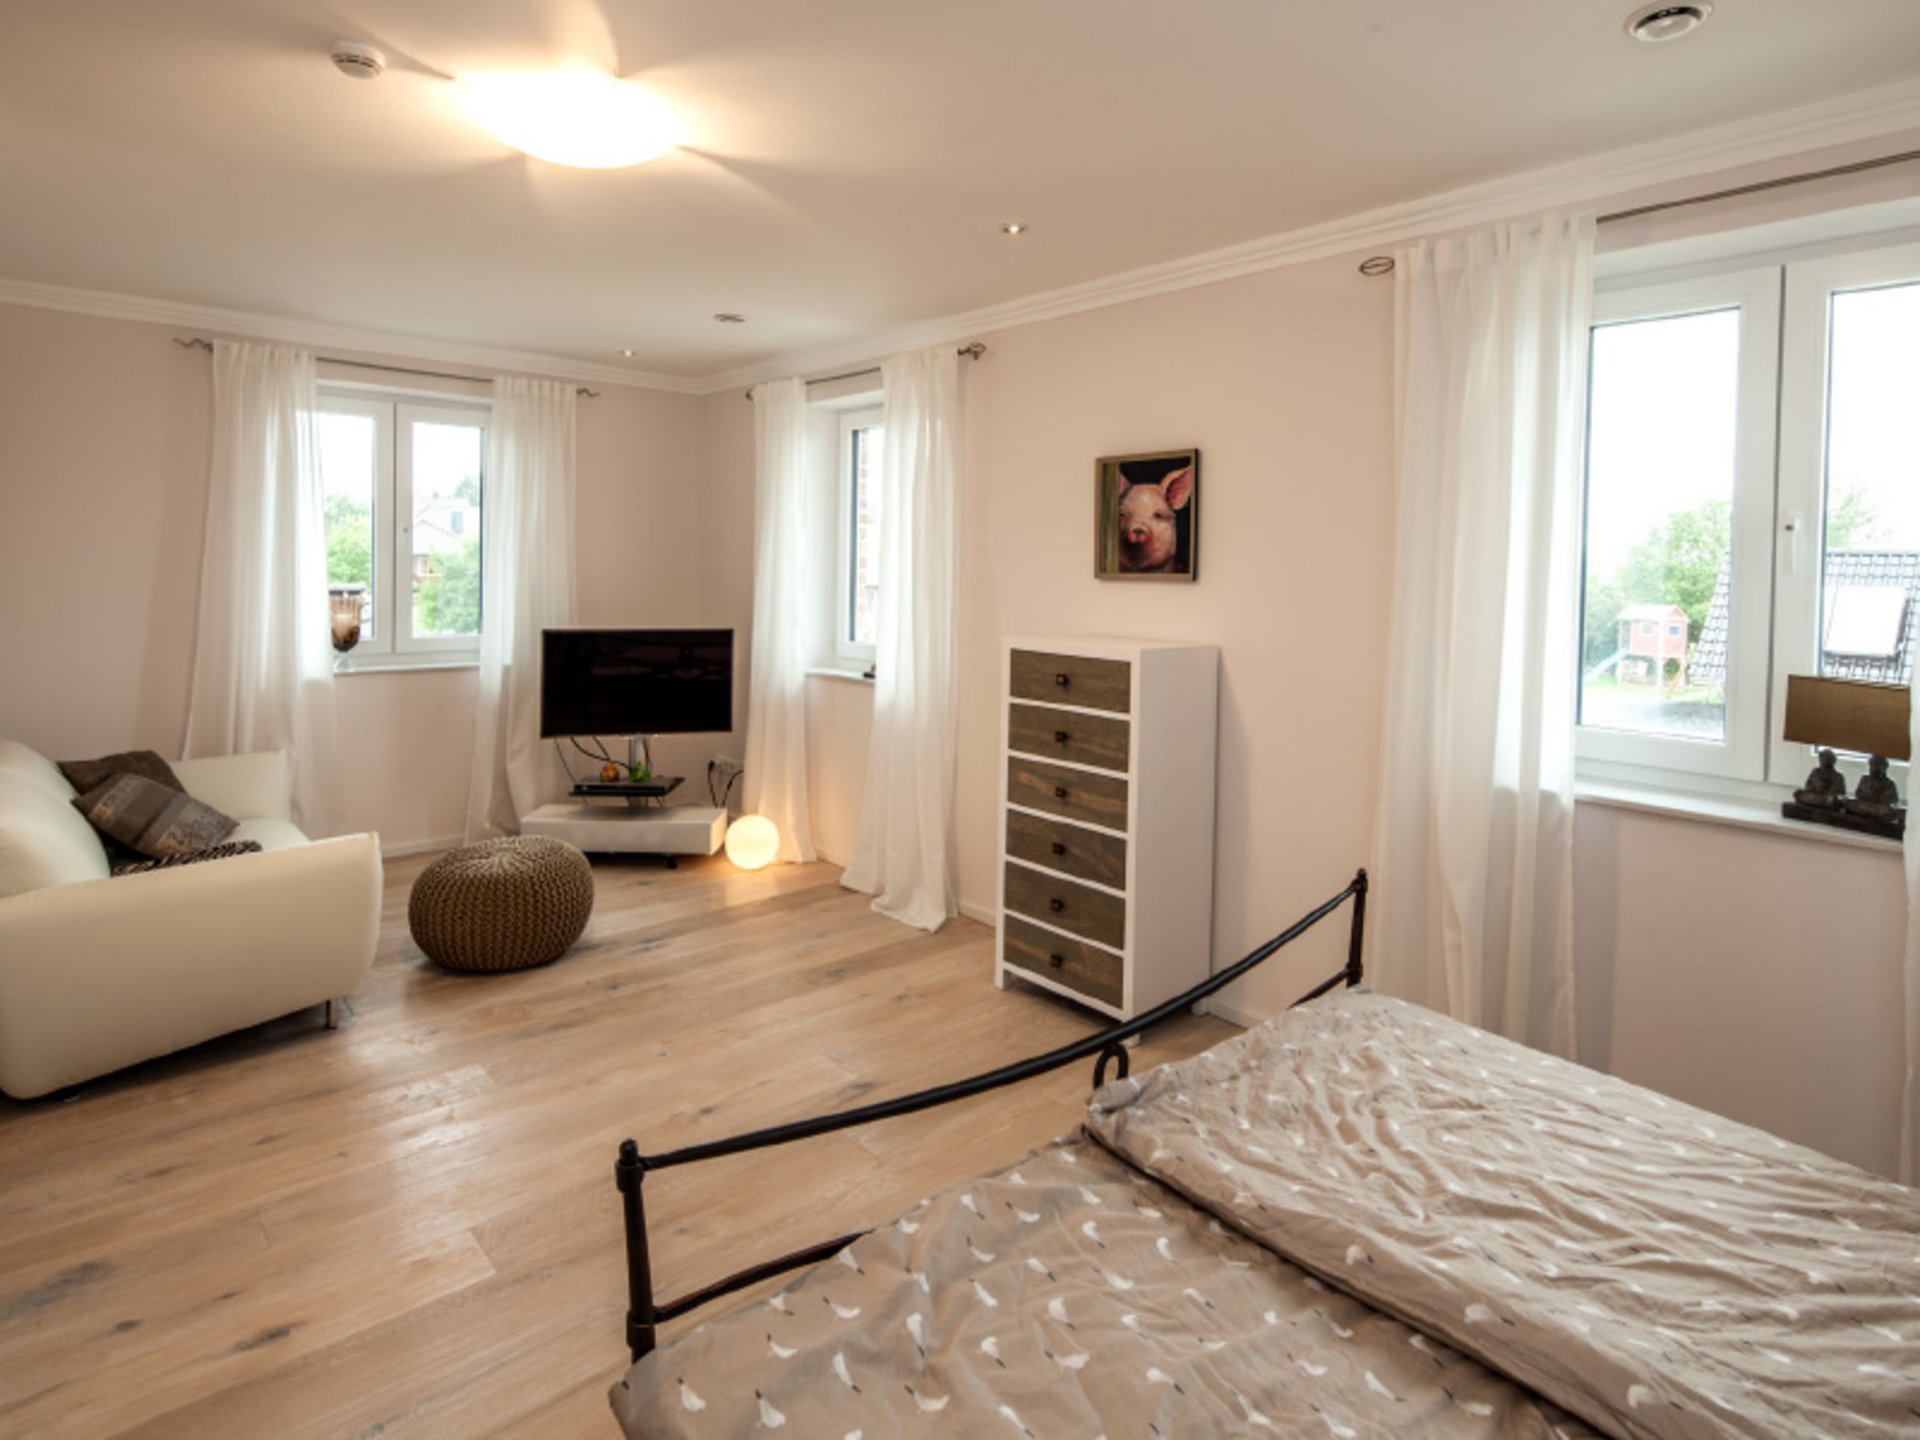 In Haus Pohl wird das Schlafzimmer zu einem stilvollen und gemütlichen Wohnraum. (Foto: © BAUMEISTER-HAUS)